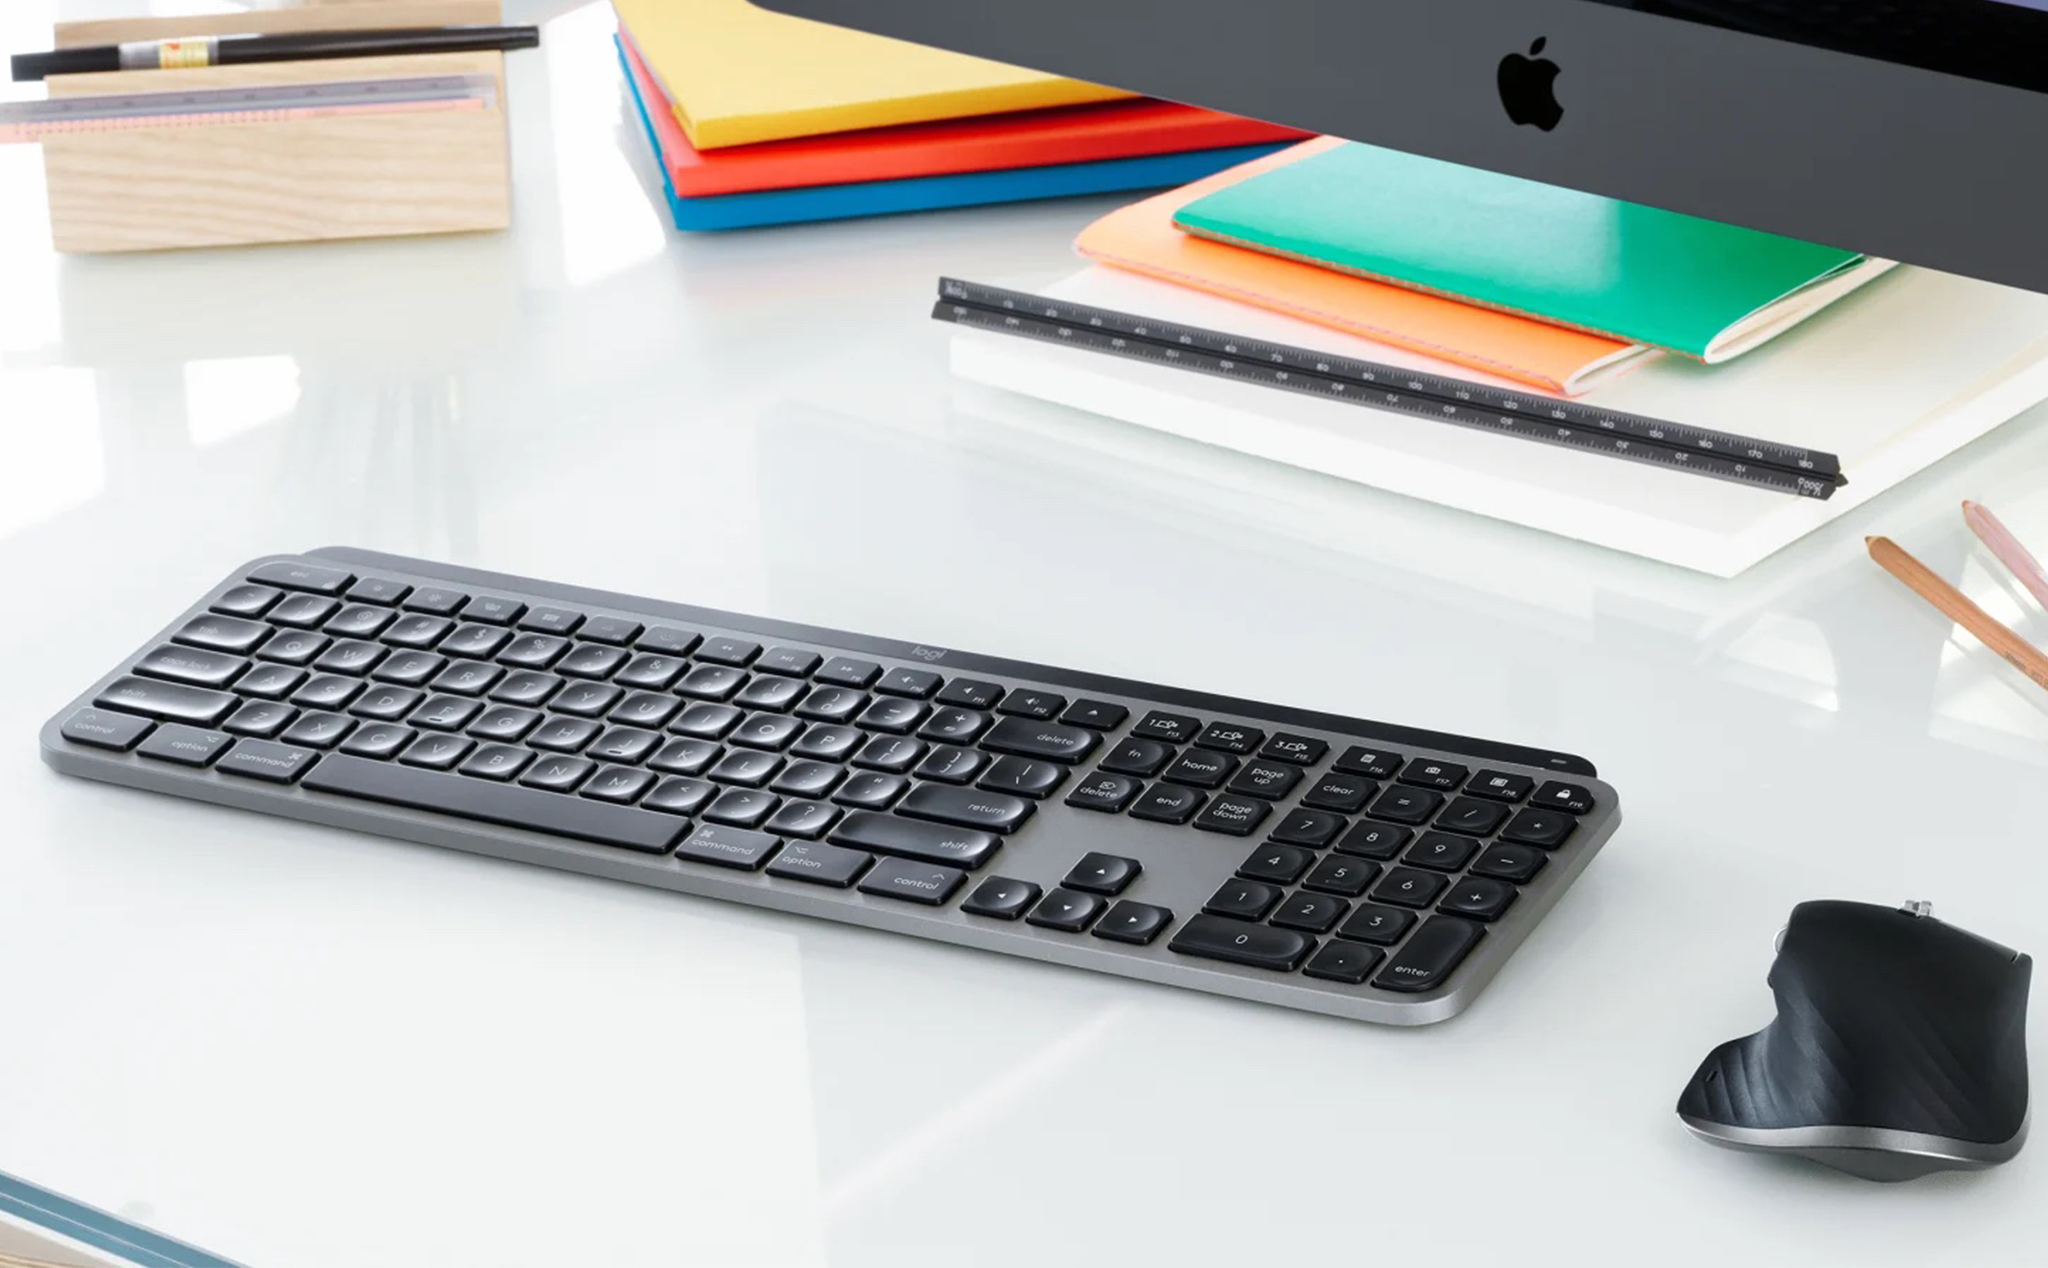 Logitech ra mắt bàn phím MX Keys dành cho Mac, giá 100 USD, pin có thể sử dụng lên đến 5 tháng